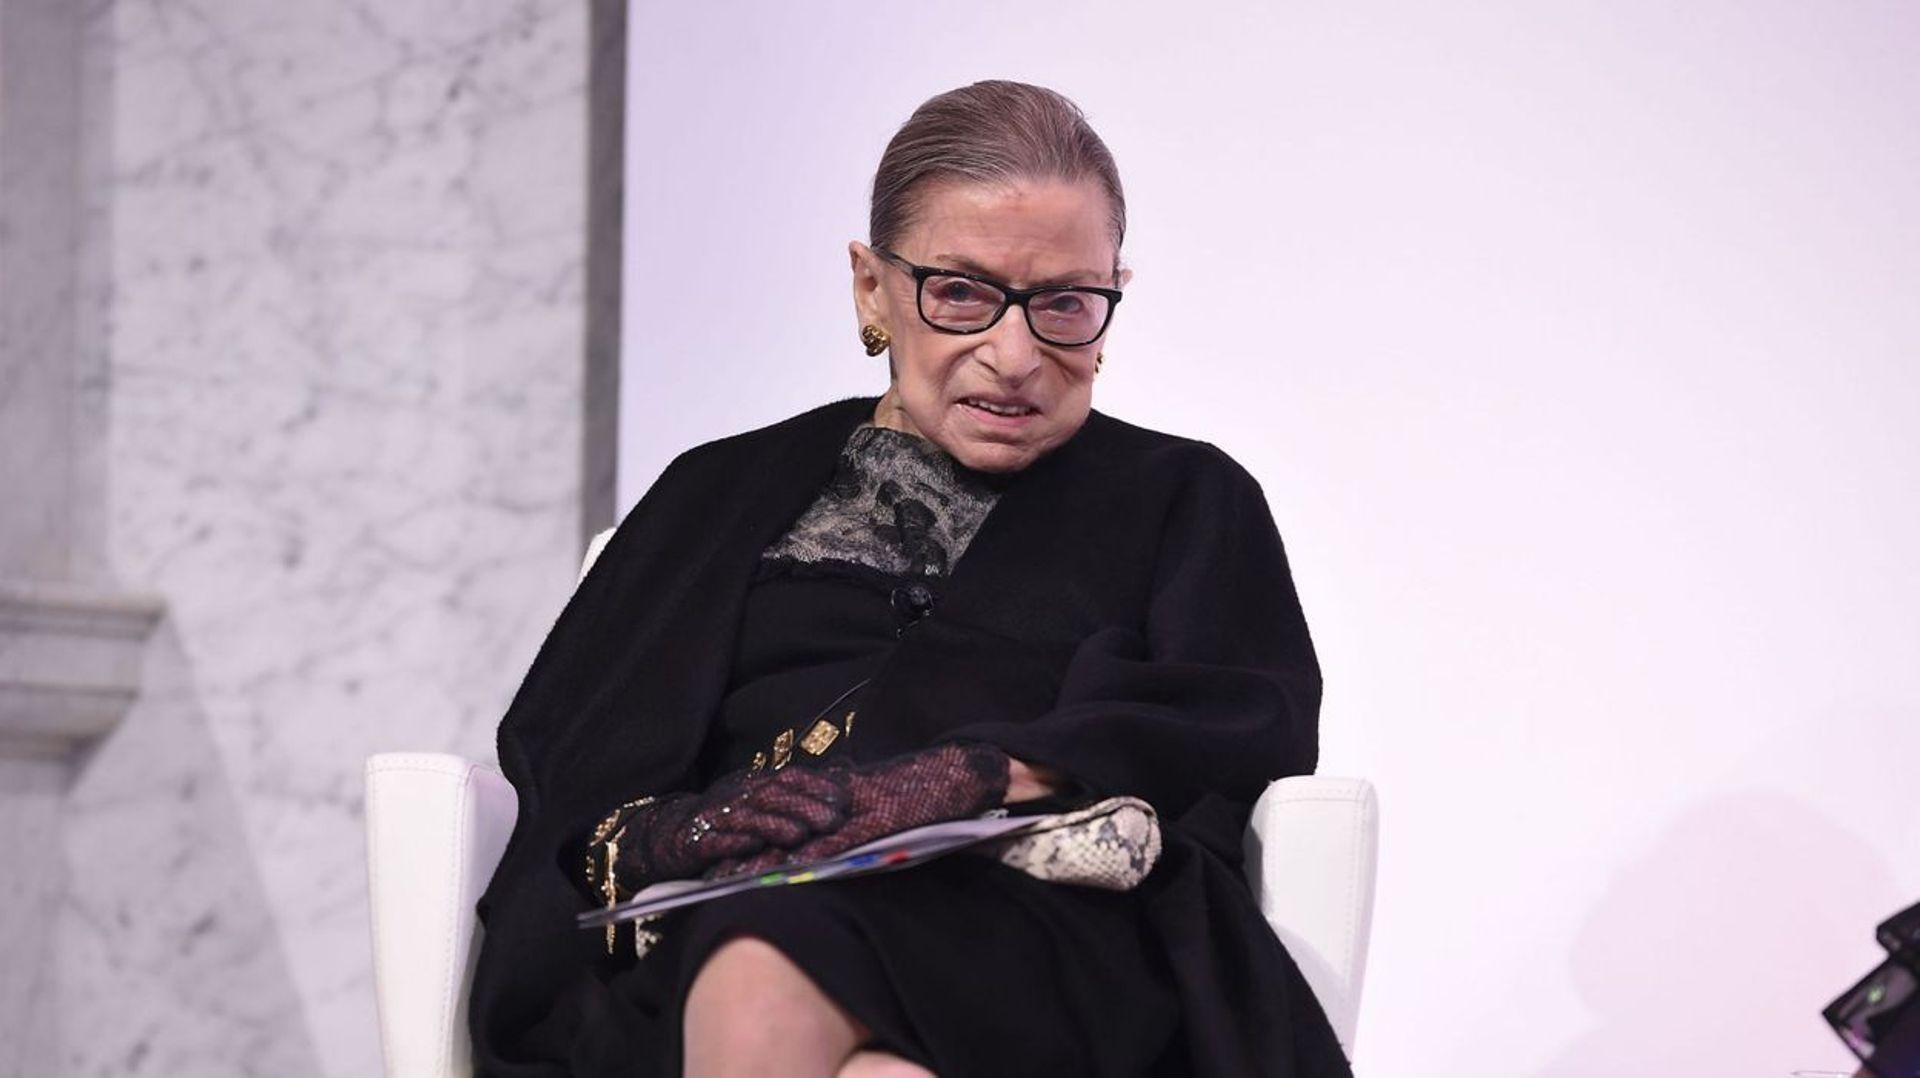 Décès de la juge Ruth Bader Ginsberg: pourquoi elle était une icône féministe